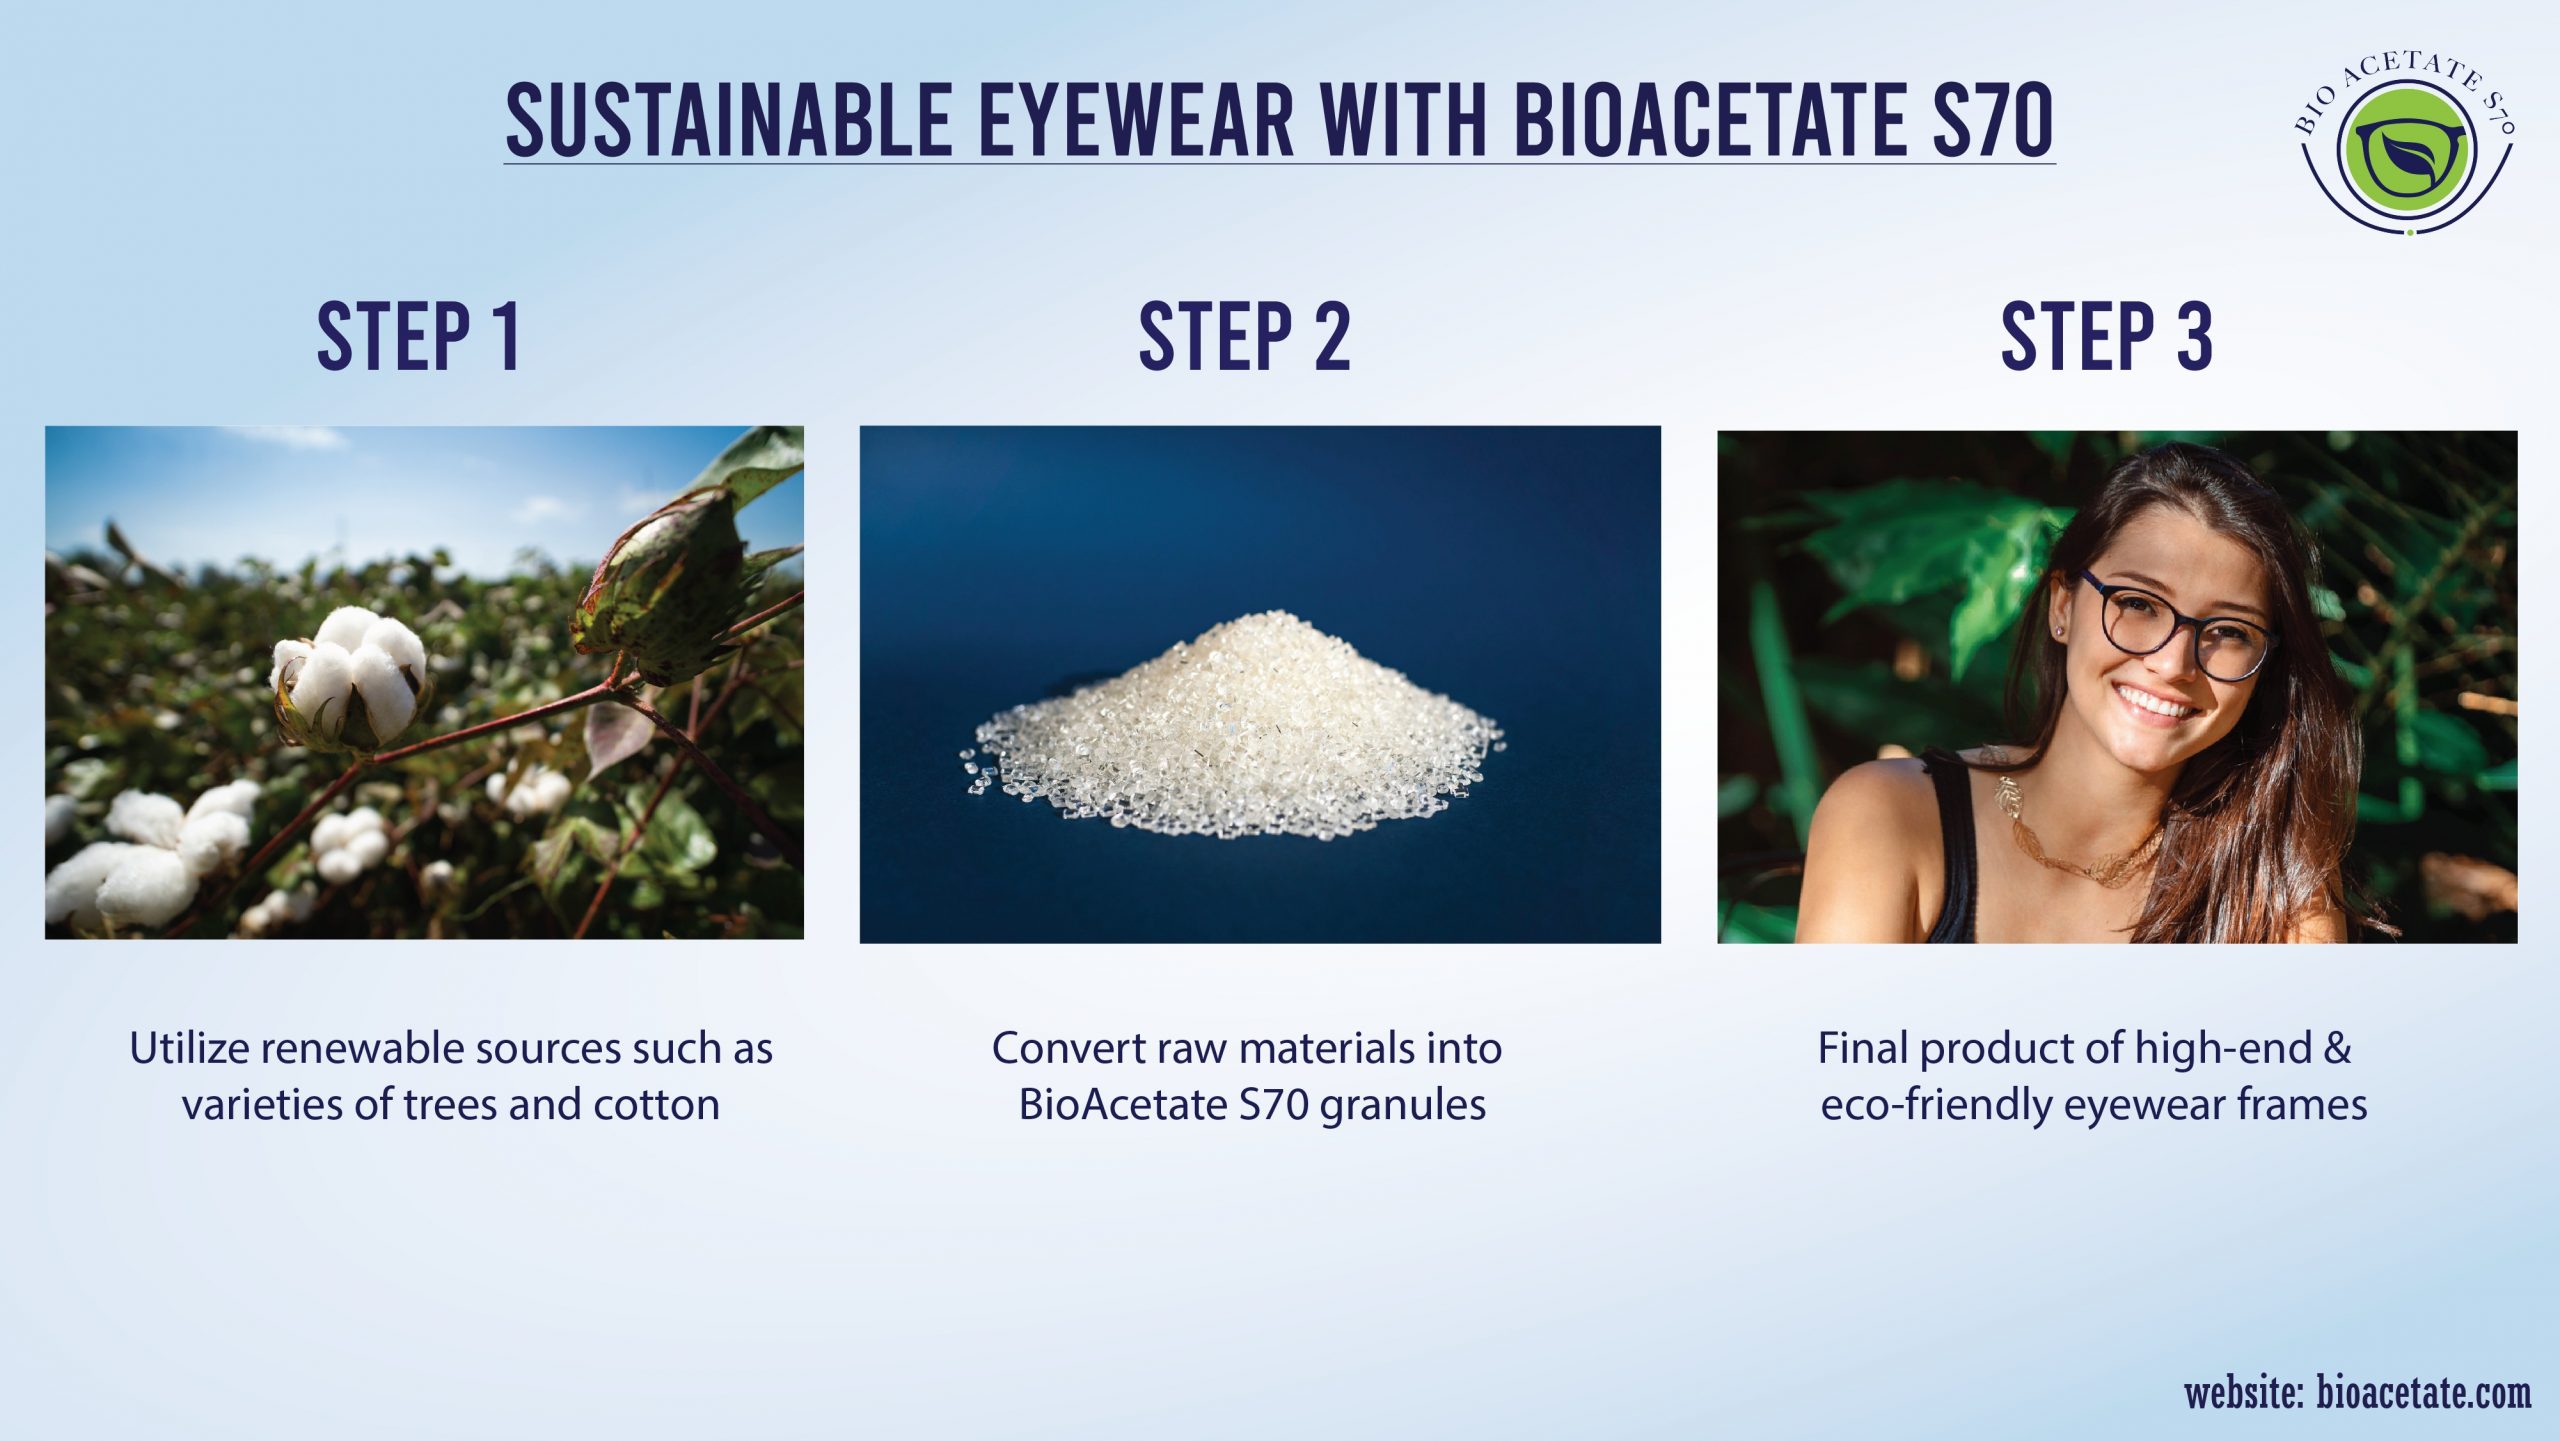 BioAcetate S70 Eyewear 3 Steps Process